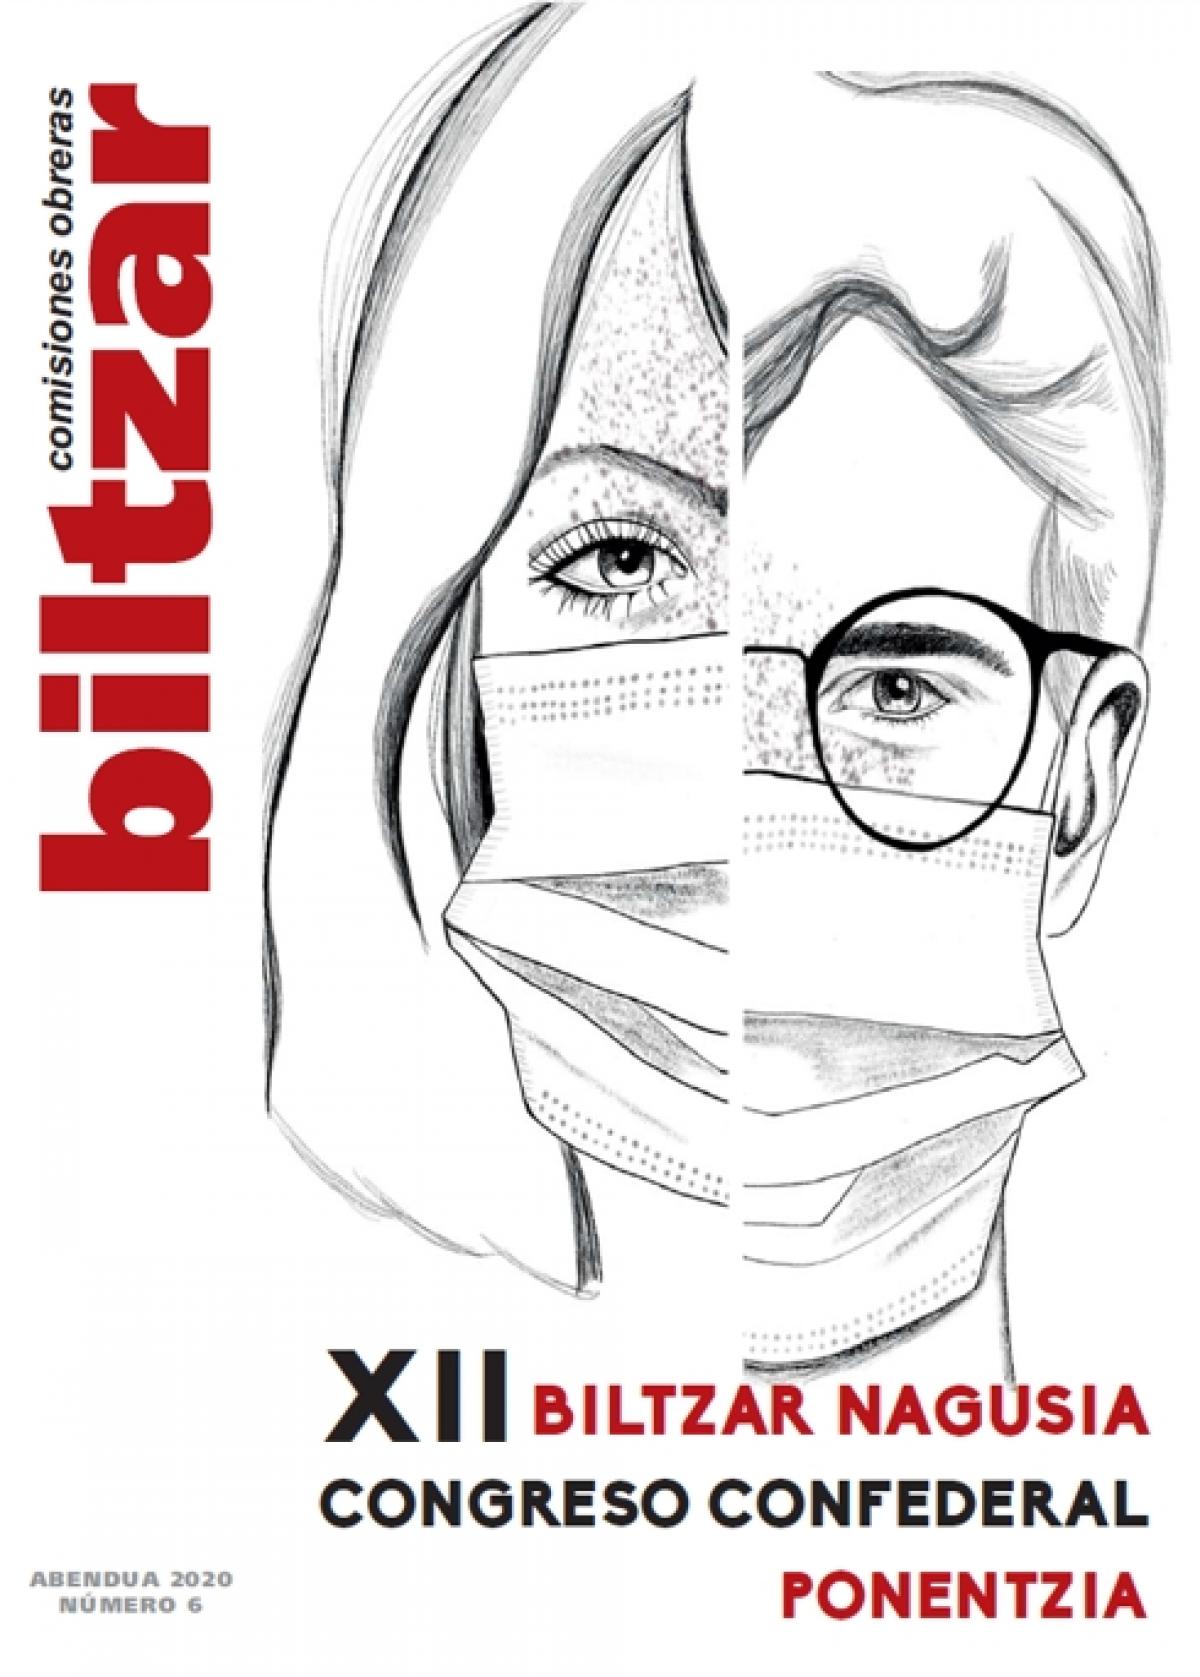 Biltzar ponencia diciembre 2020